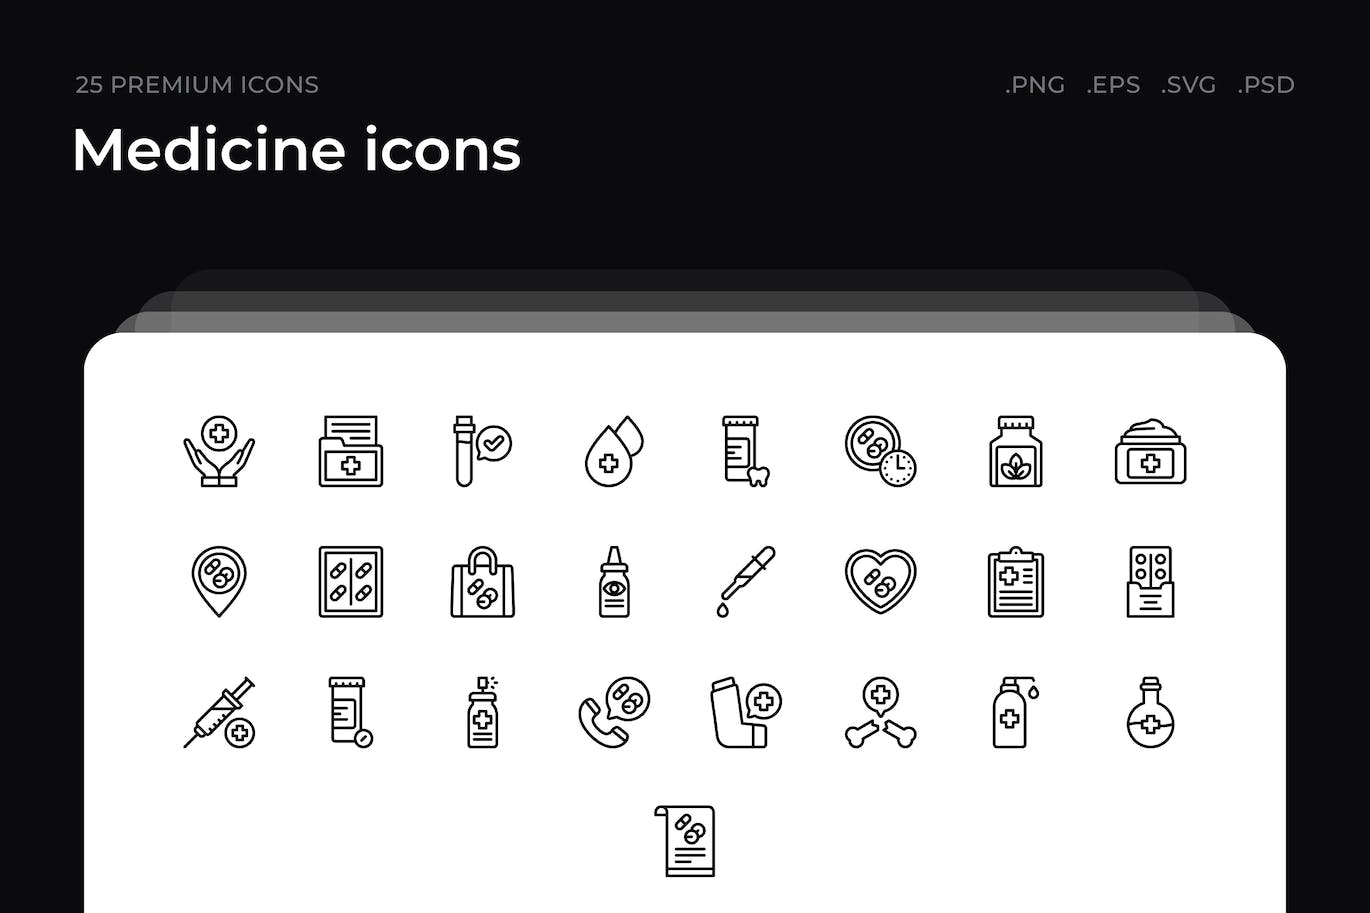 25枚医学主题简约线条矢量图标 Medicine icons 图标素材 第1张